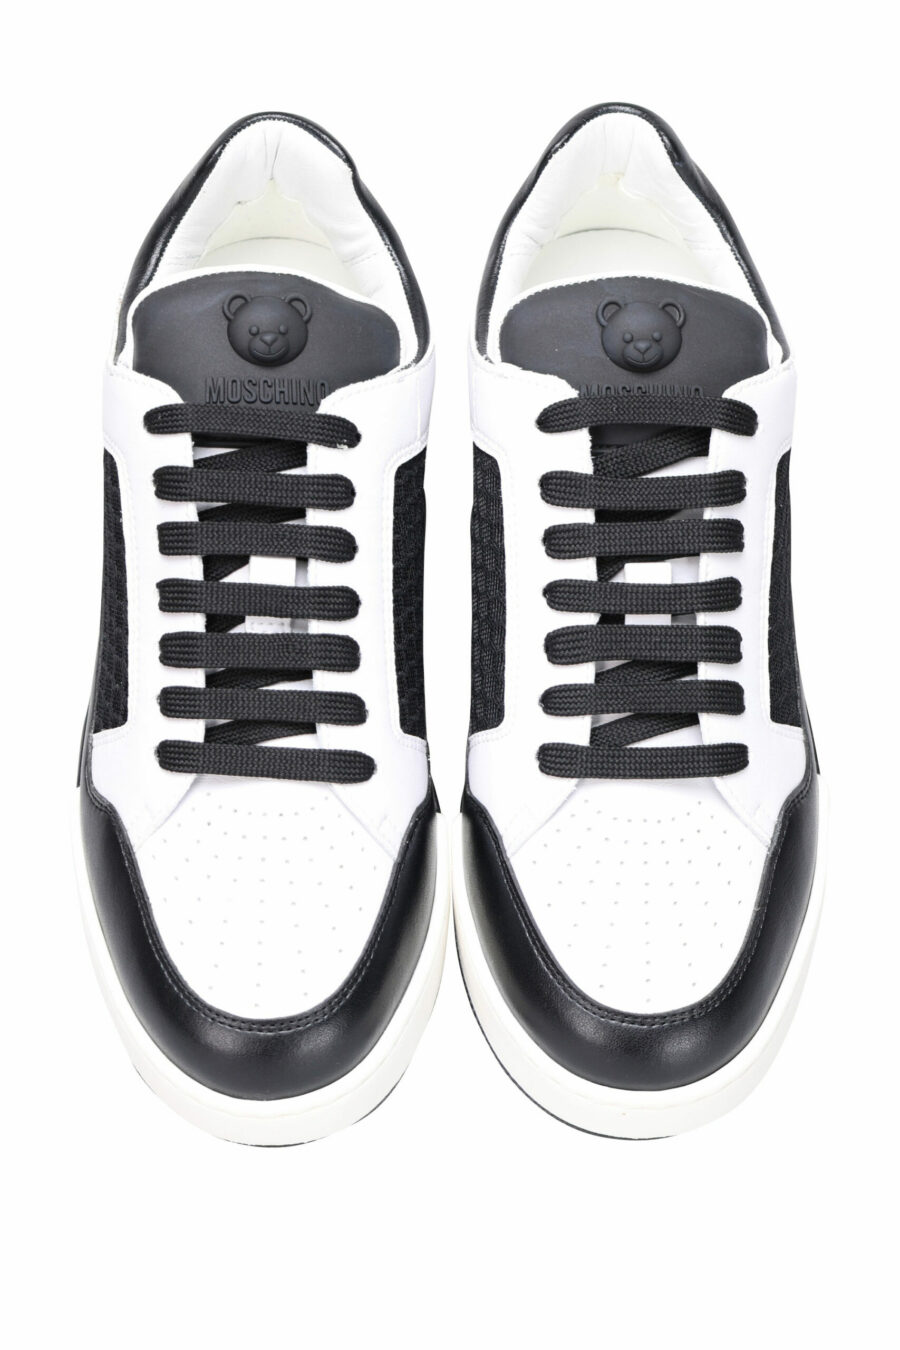 Chaussures bicolores noires et blanches "kevin40" avec mini logo - 8054388024457 4 scaled